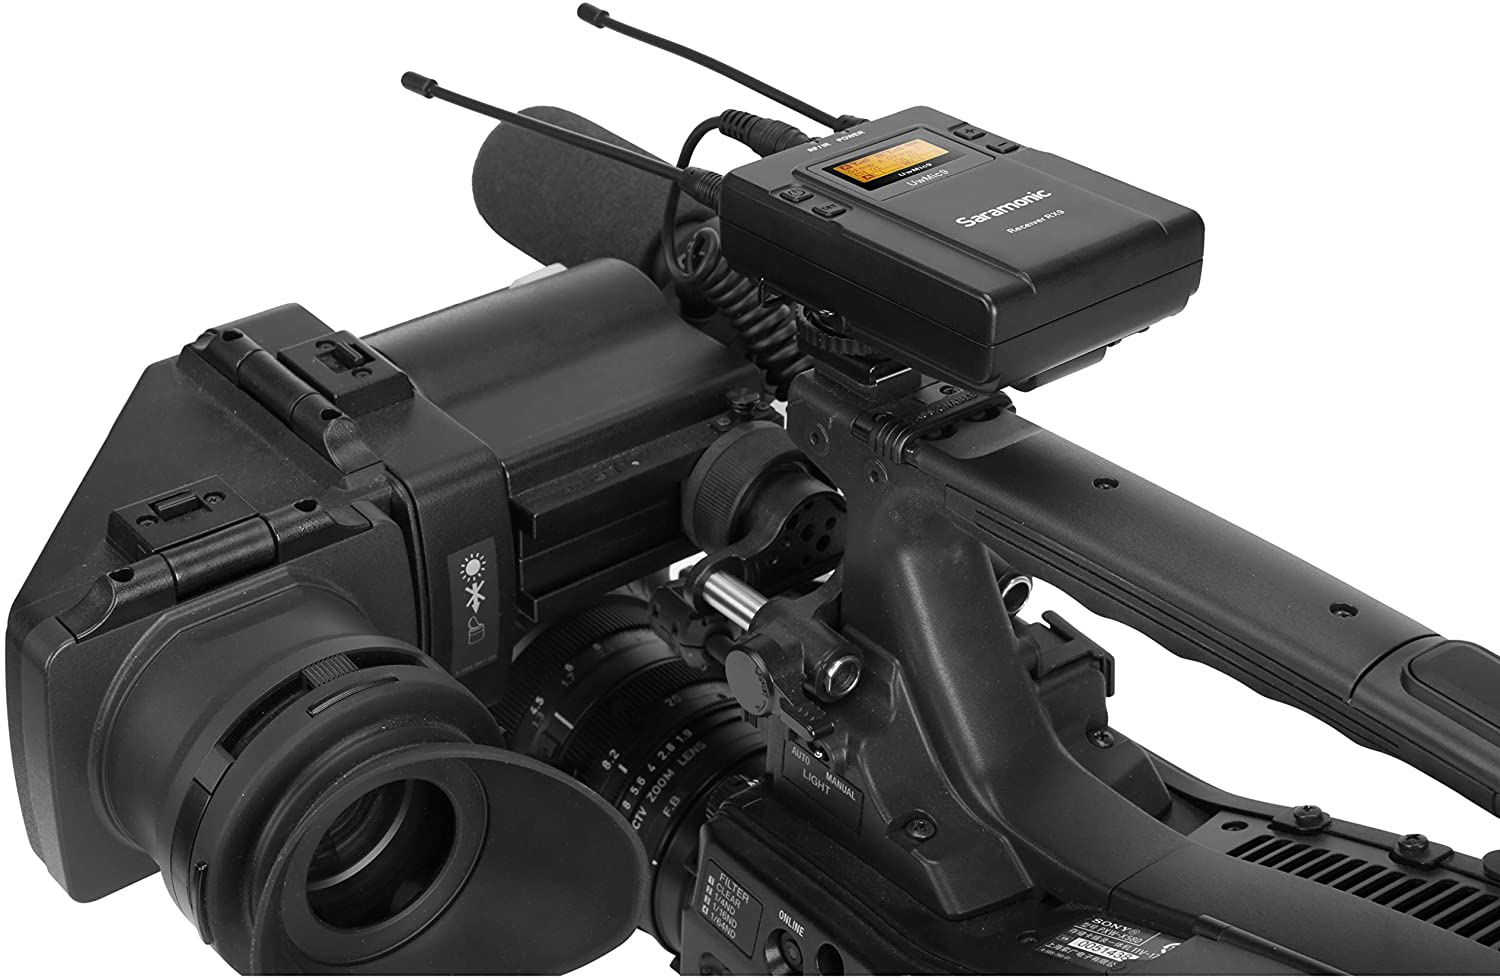 سارامونیک UwMic9 RX9 یک گیرنده بی سیم UHF قابل حمل، دو کاناله و قابل نصب روی دوربین است که به شما امکان می دهد از دو فرستنده بی سیم مجزا (به طور جداگانه فروخته می شود) استفاده کنید در حالی که فقط باید یک گیرنده فوق فشرده را به دوربین خود وصل کنید